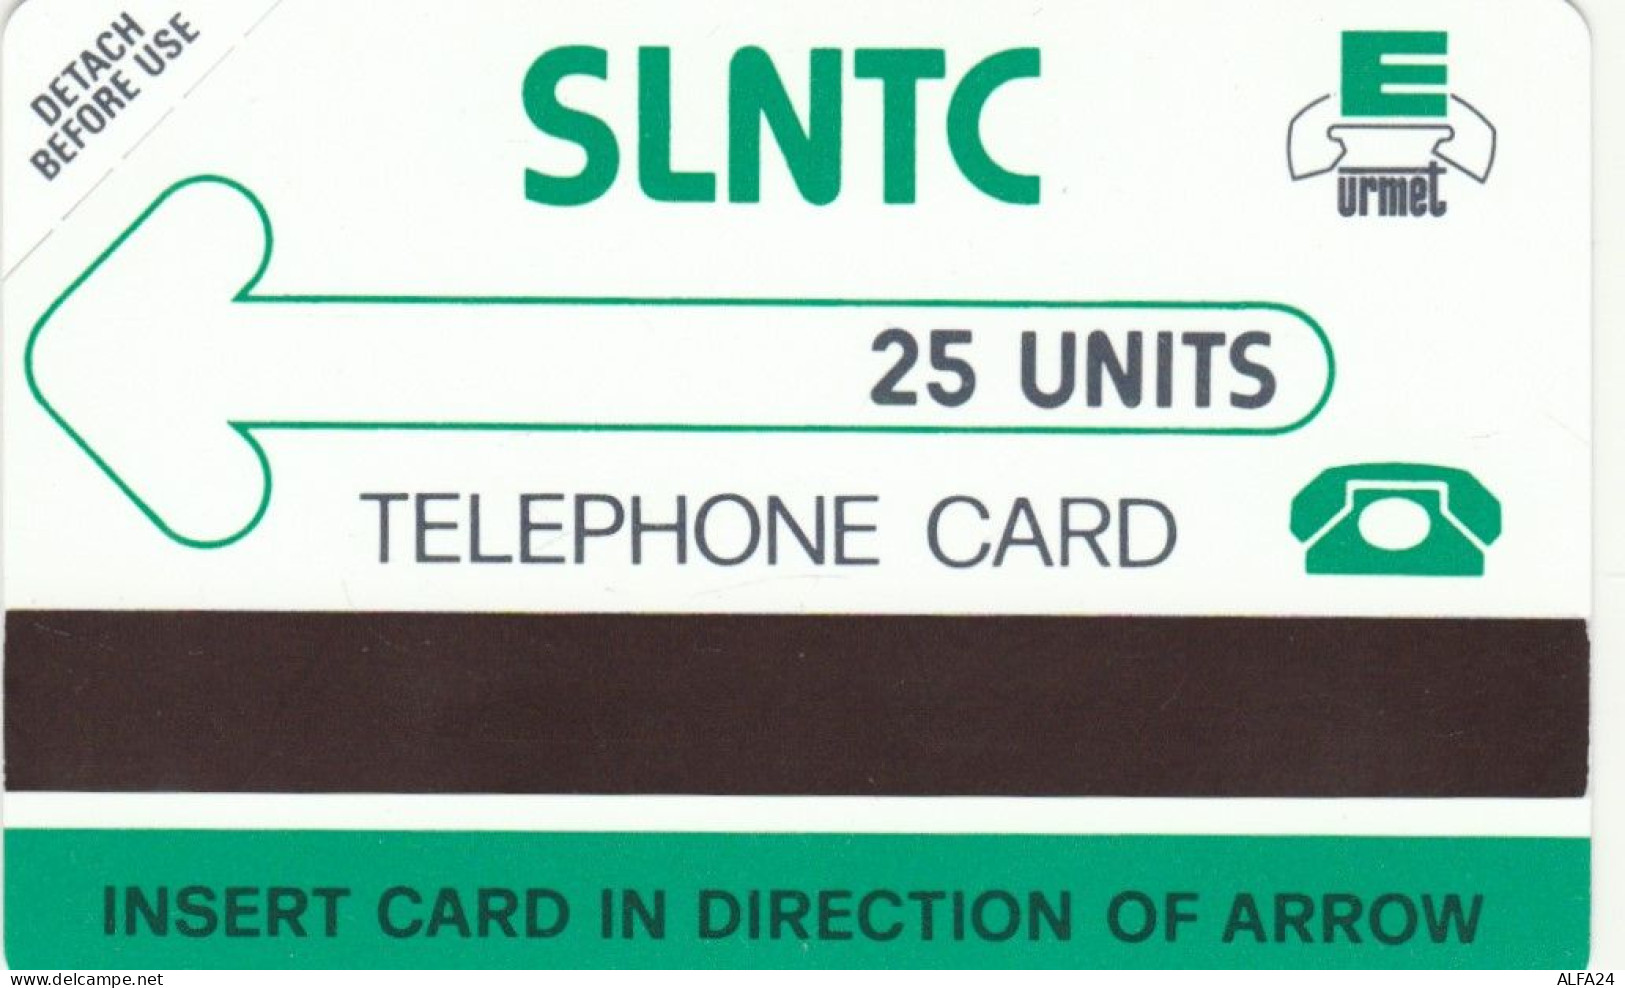 PHONE CARD SIERRA LEONE NUOVA URMET (E72.22.8 - Sierra Leone